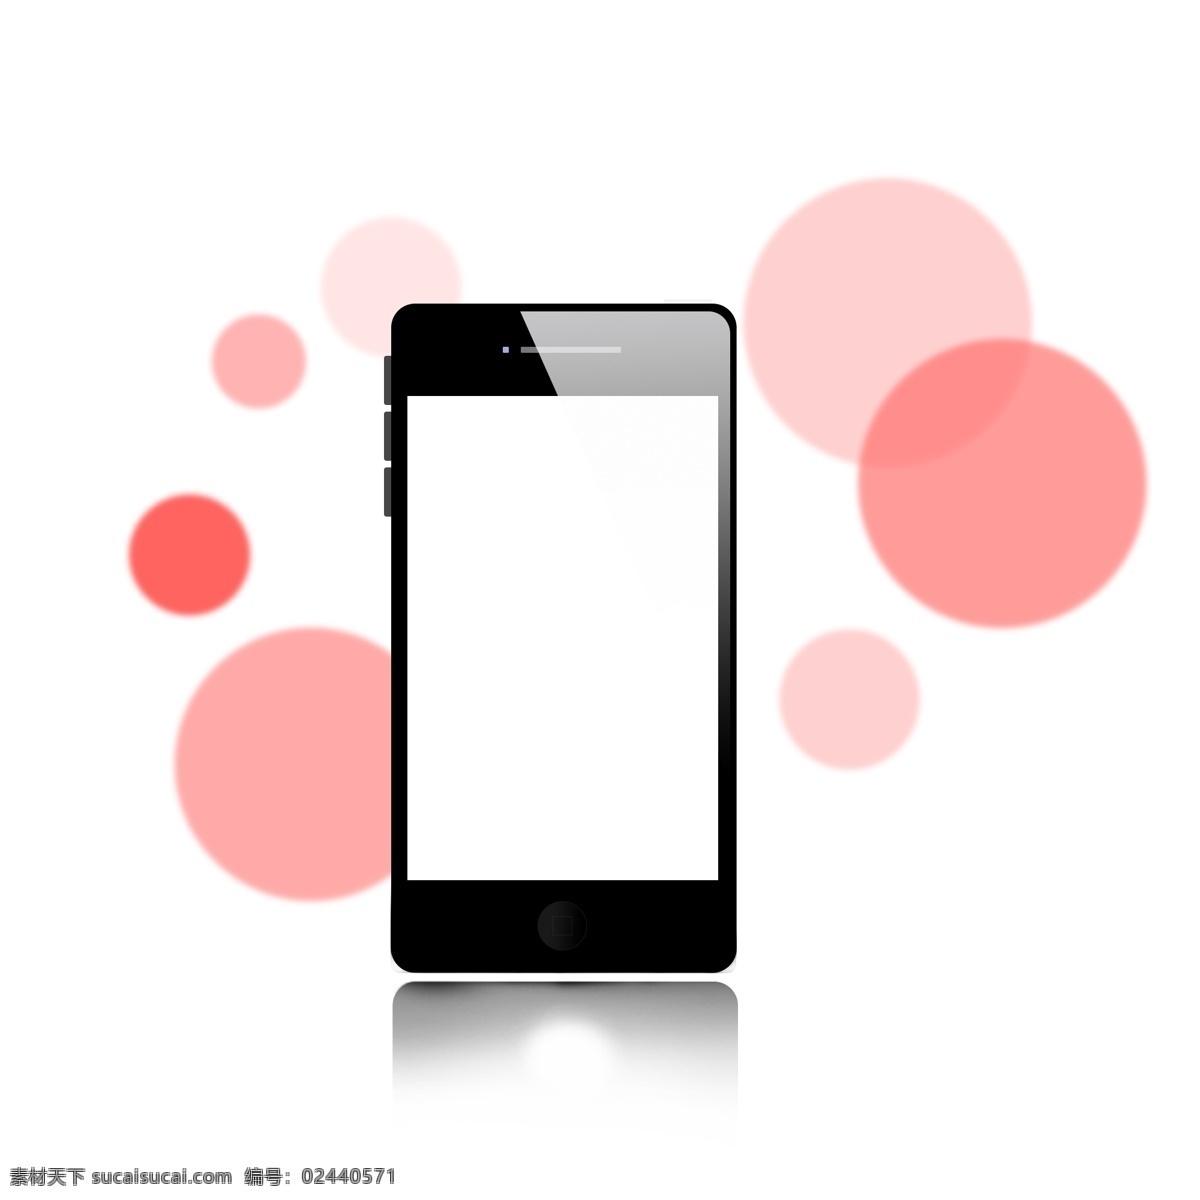 黑色 手机 气泡 装饰 黑色手机 样机 红色气泡 泡泡 苹果手机